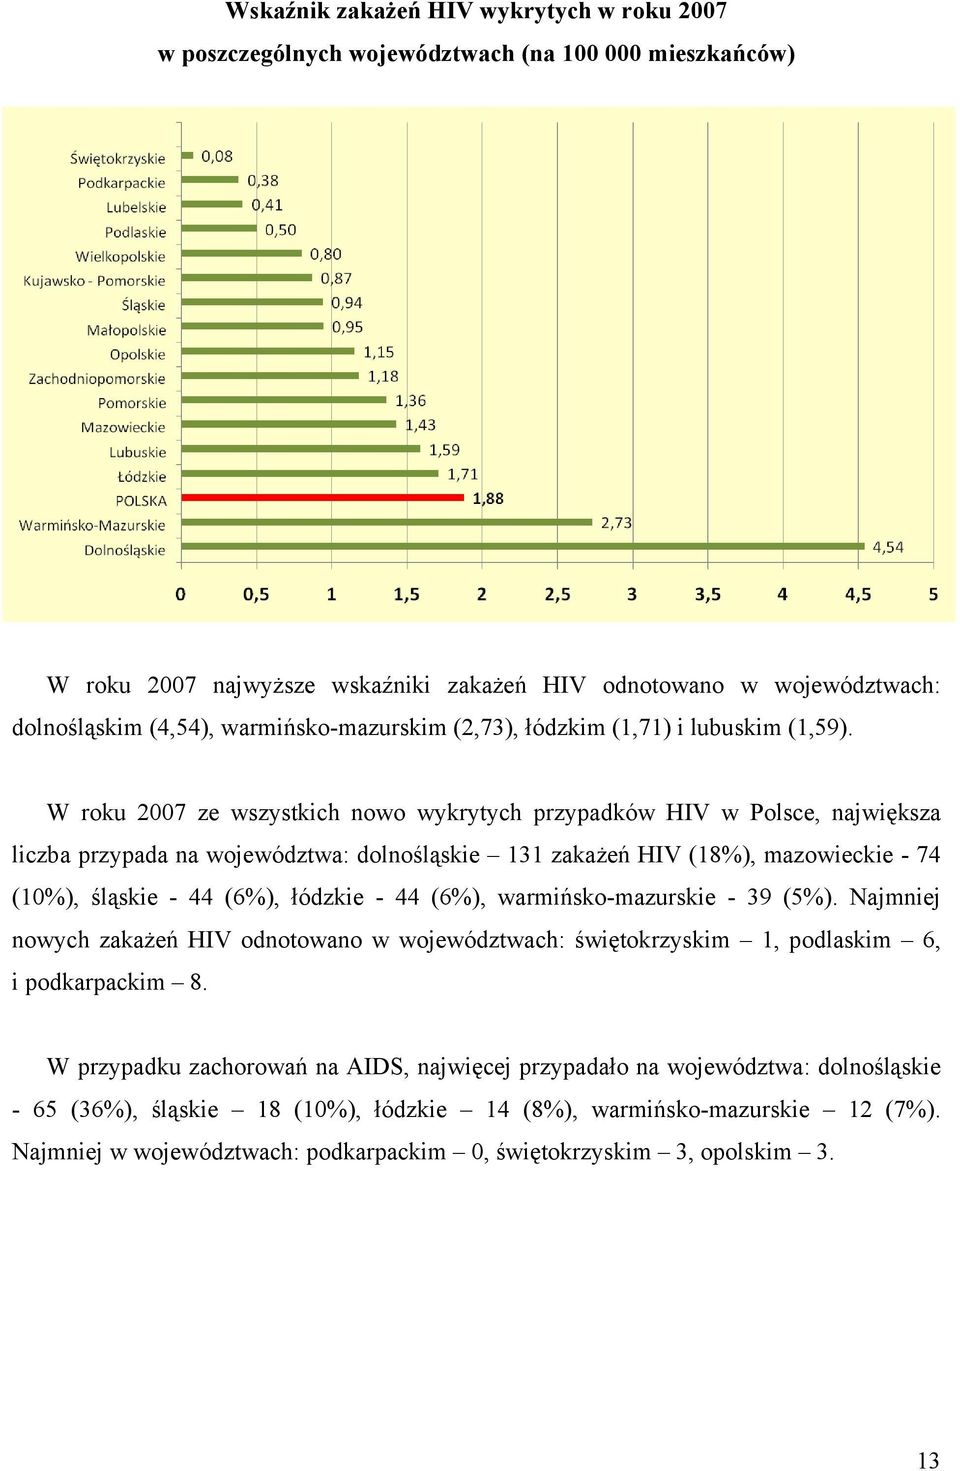 W roku 2007 ze wszystkich nowo wykrytych przypadków HIV w Polsce, największa liczba przypada na województwa: dolnośląskie 131 zakażeń HIV (18%), mazowieckie - 74 (10%), śląskie - 44 (6%), łódzkie -